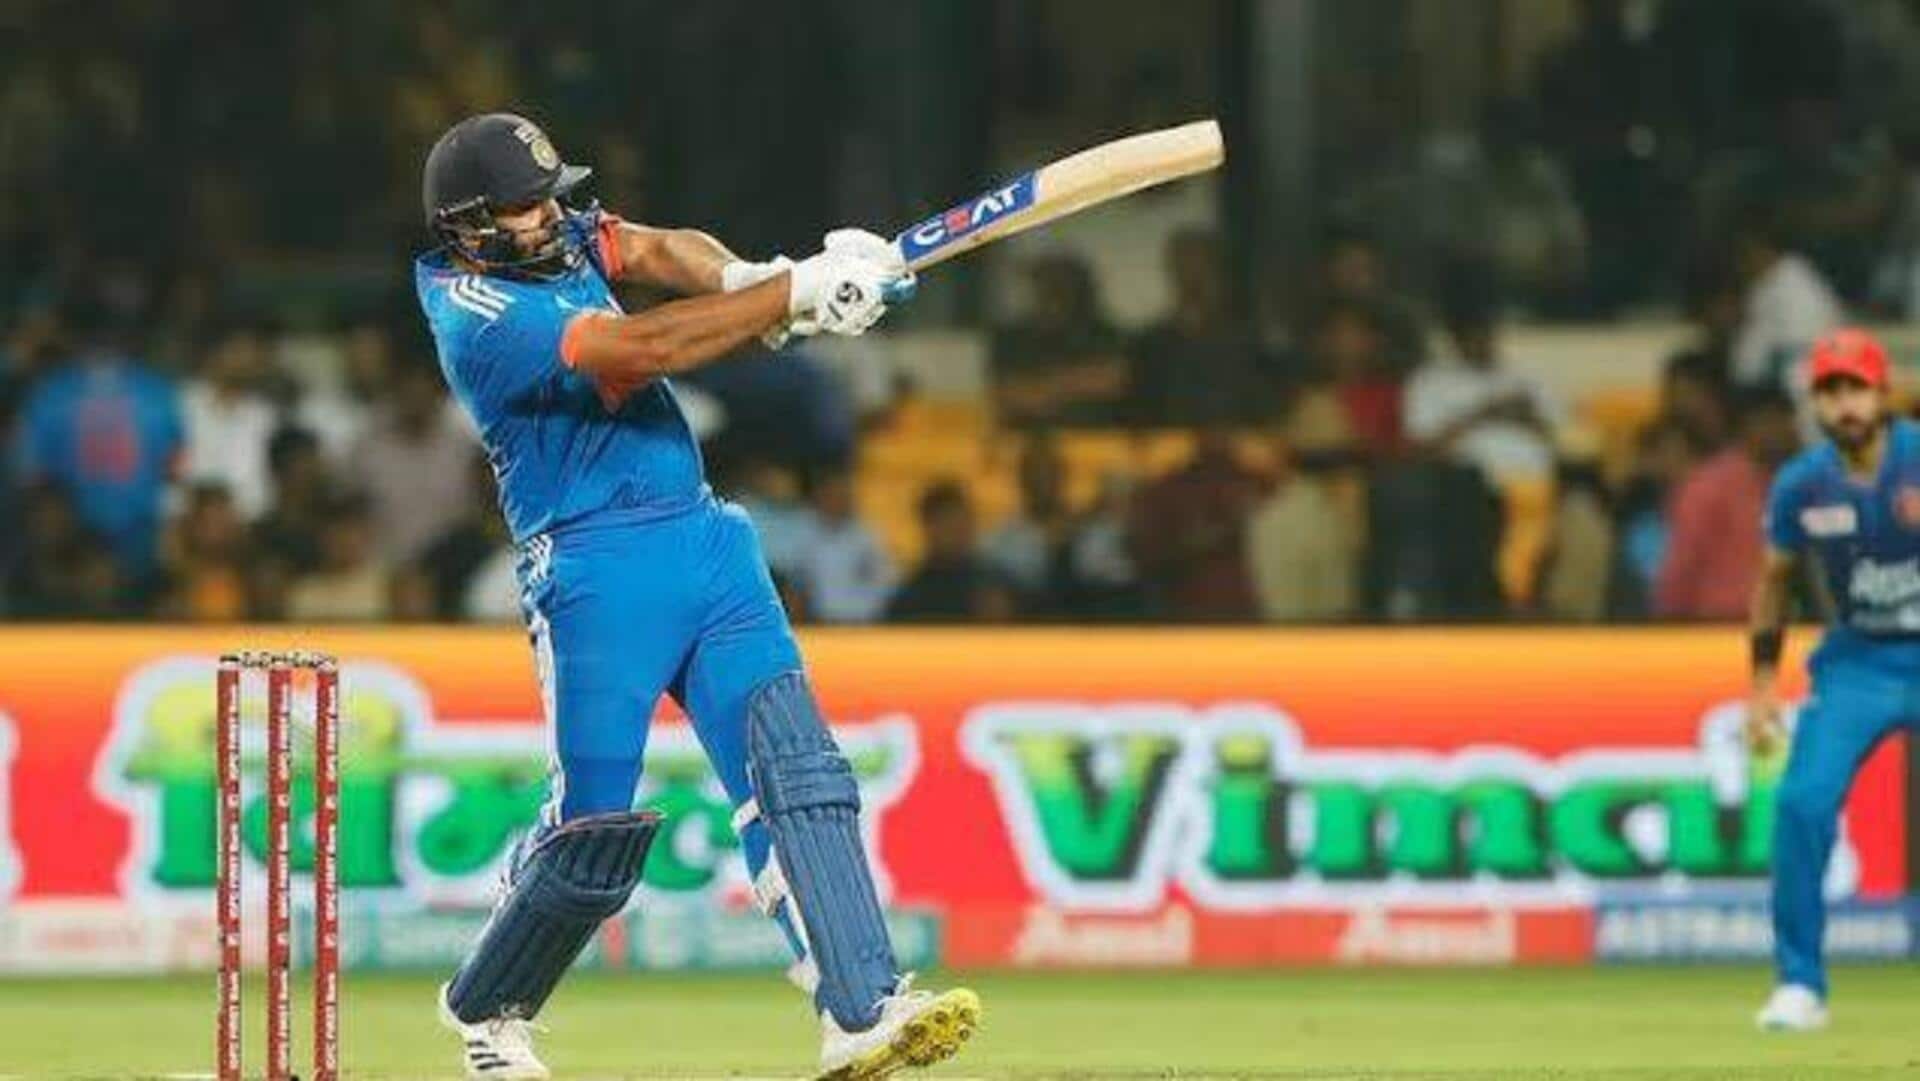 रोहित शर्मा टी-20 अंतरराष्ट्रीय में बतौर ओपनर सर्वाधिक छक्के जड़ने वाले बल्लेबाज बने, जानिए आंकड़े